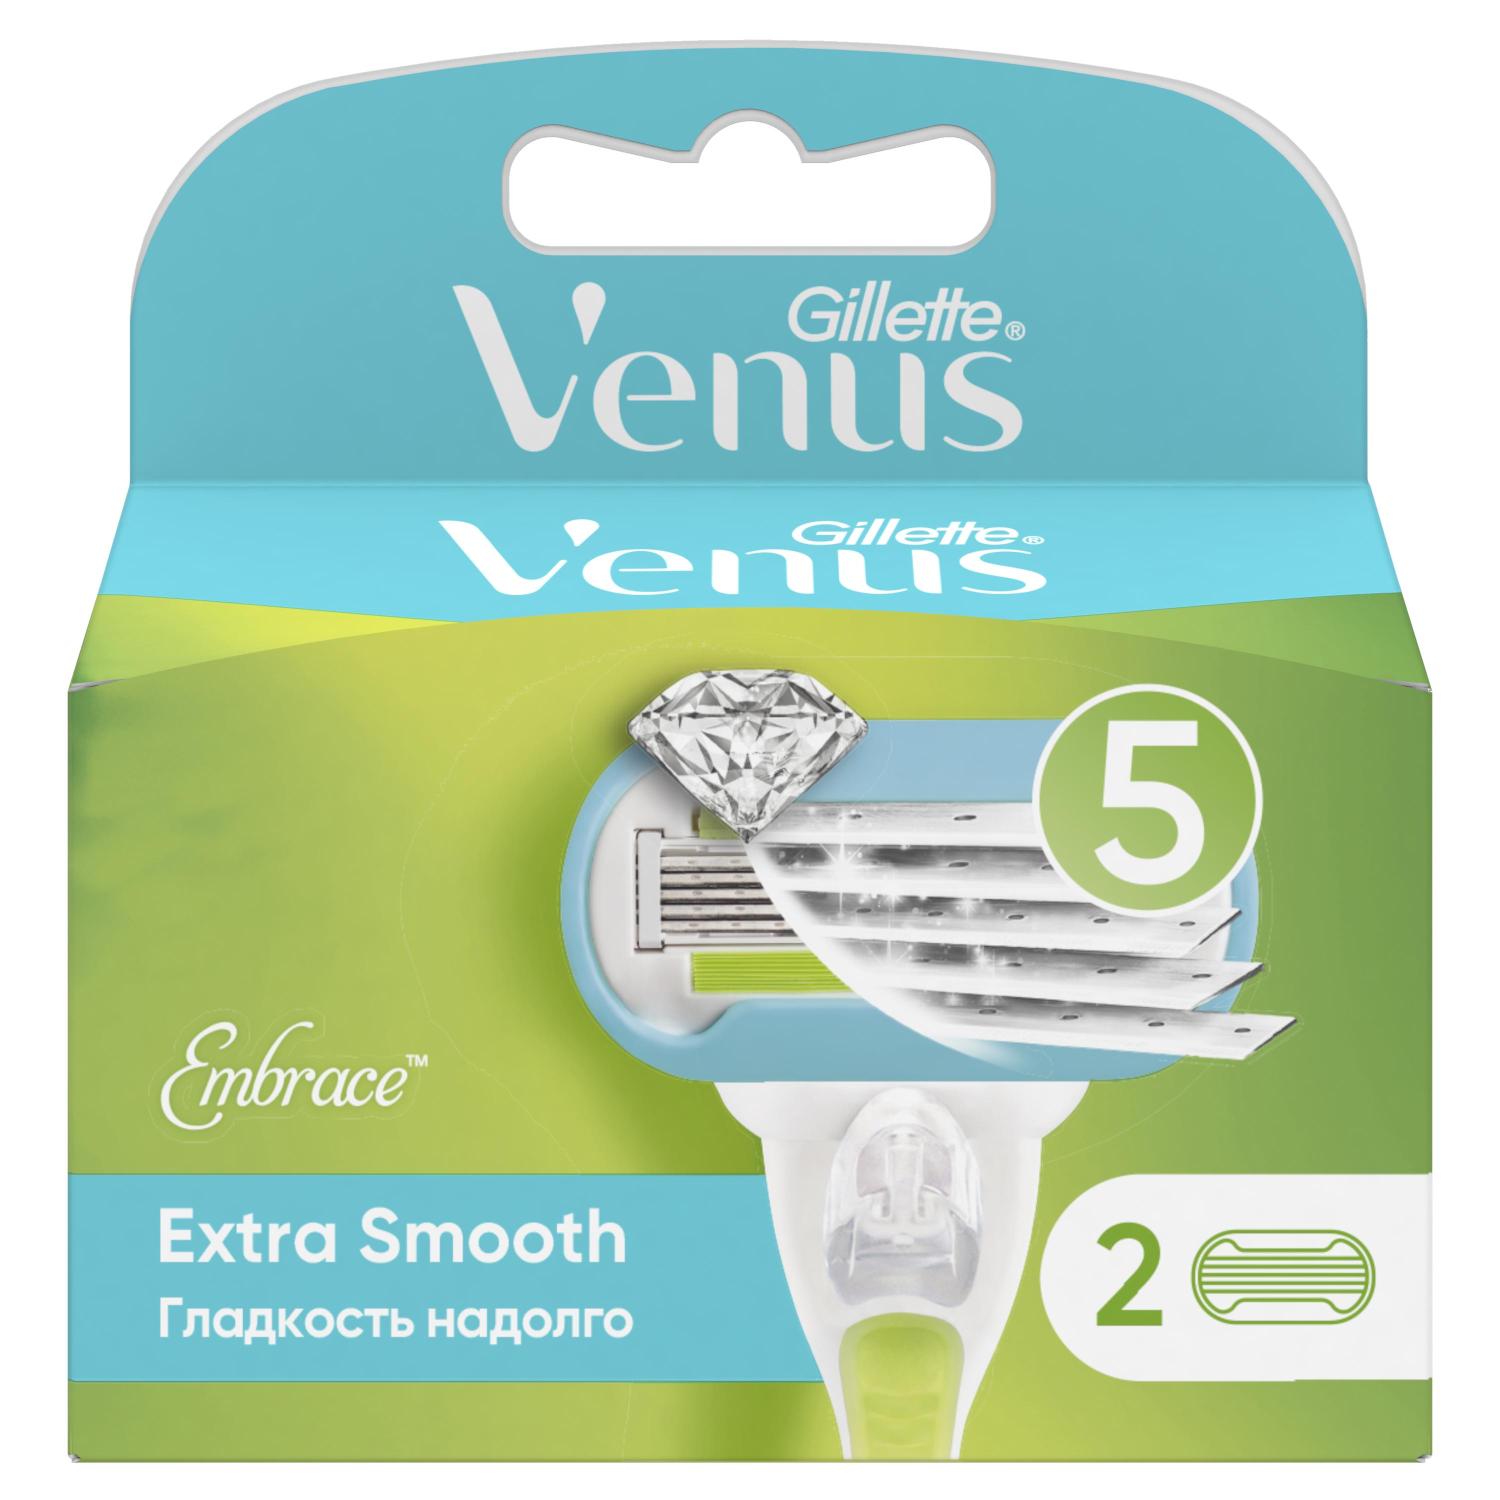 Жиллетт кассеты Венус Эмбрейс №2 жиллетт кассеты венус для женщин 4